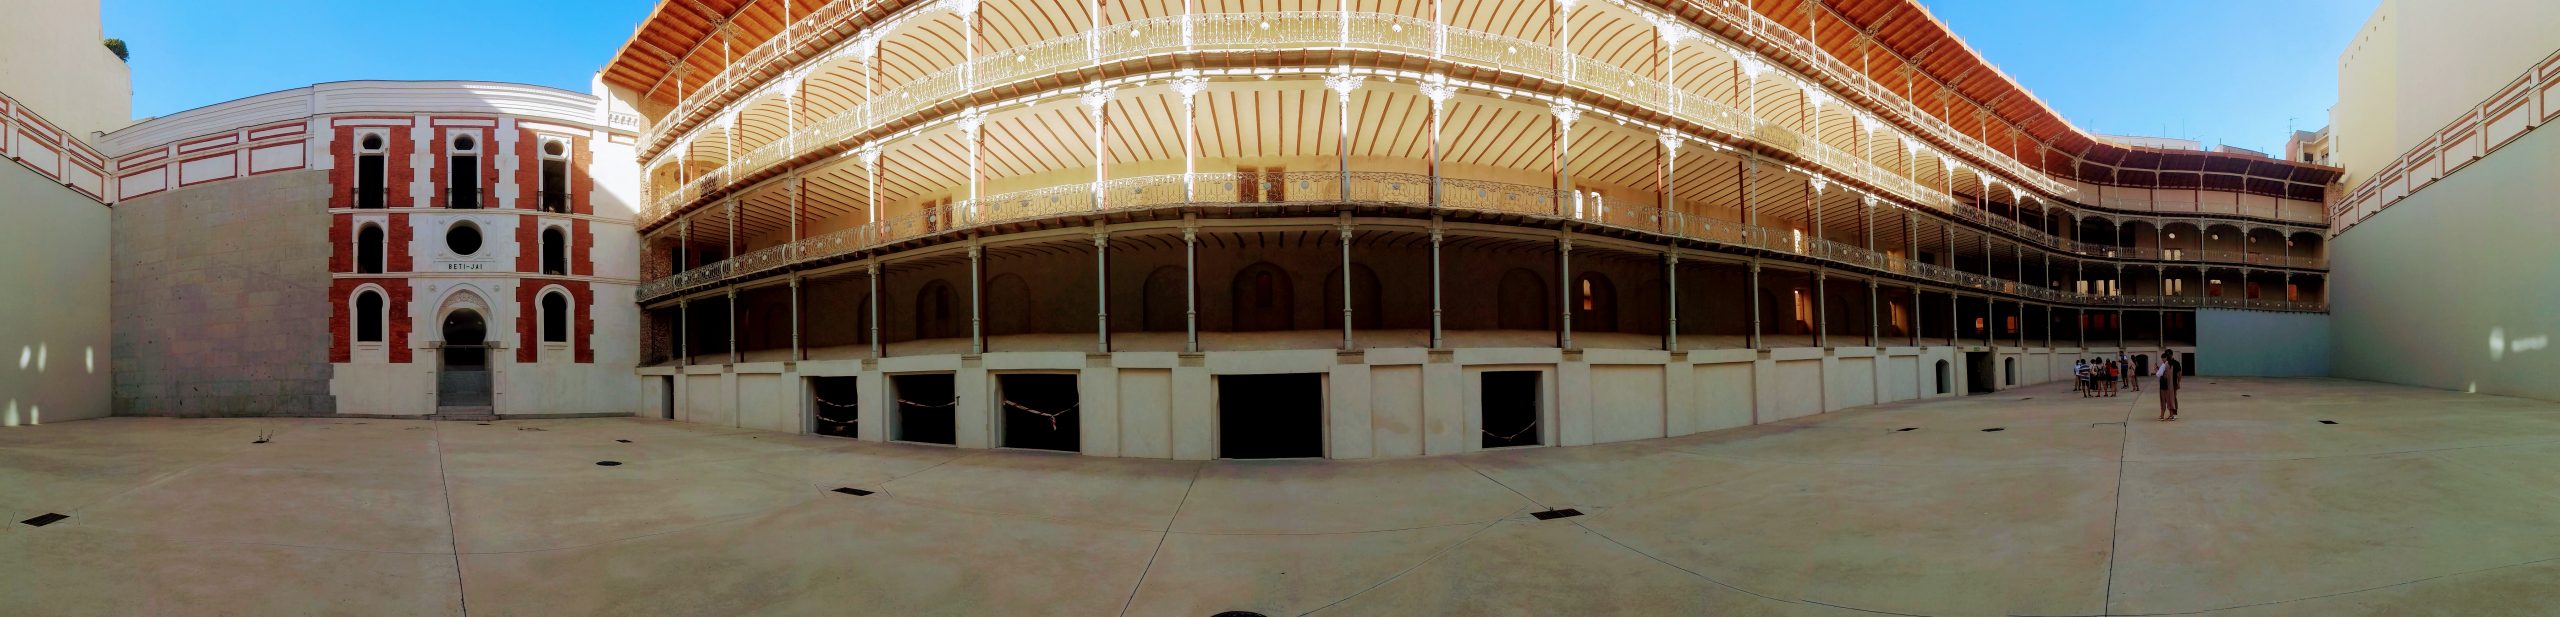 Panoramic of the interior of Beti-Jai jai ali court in Madrid